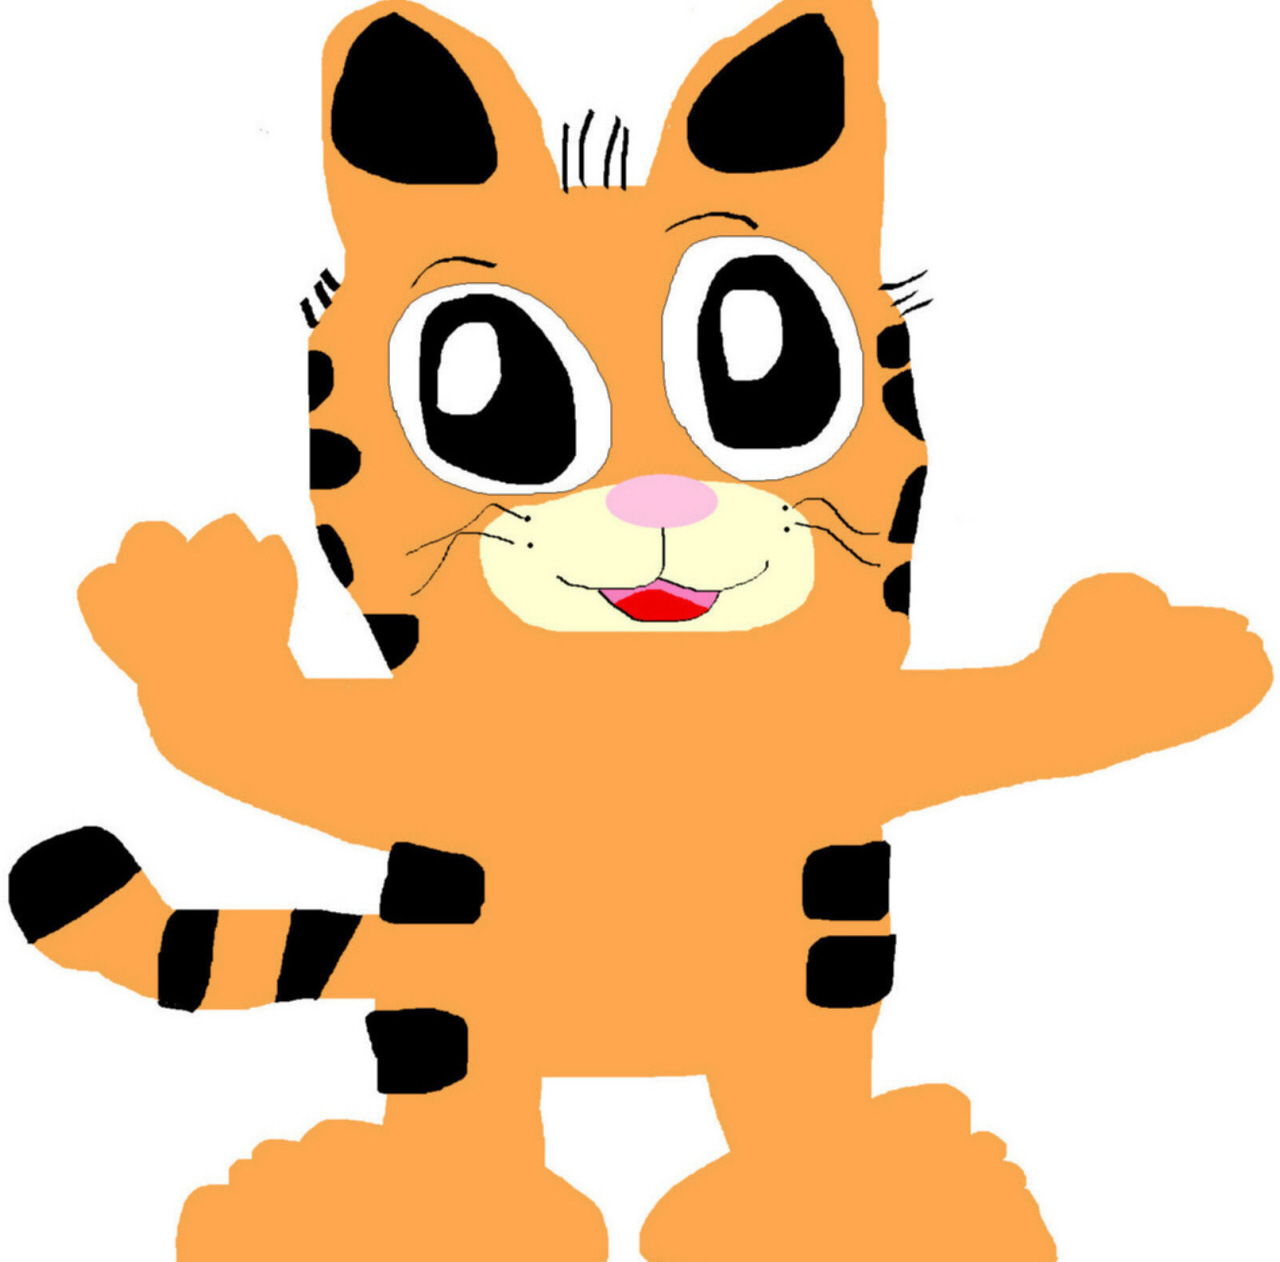 Garfield In A Cute Style MS Paint by Falconlobo